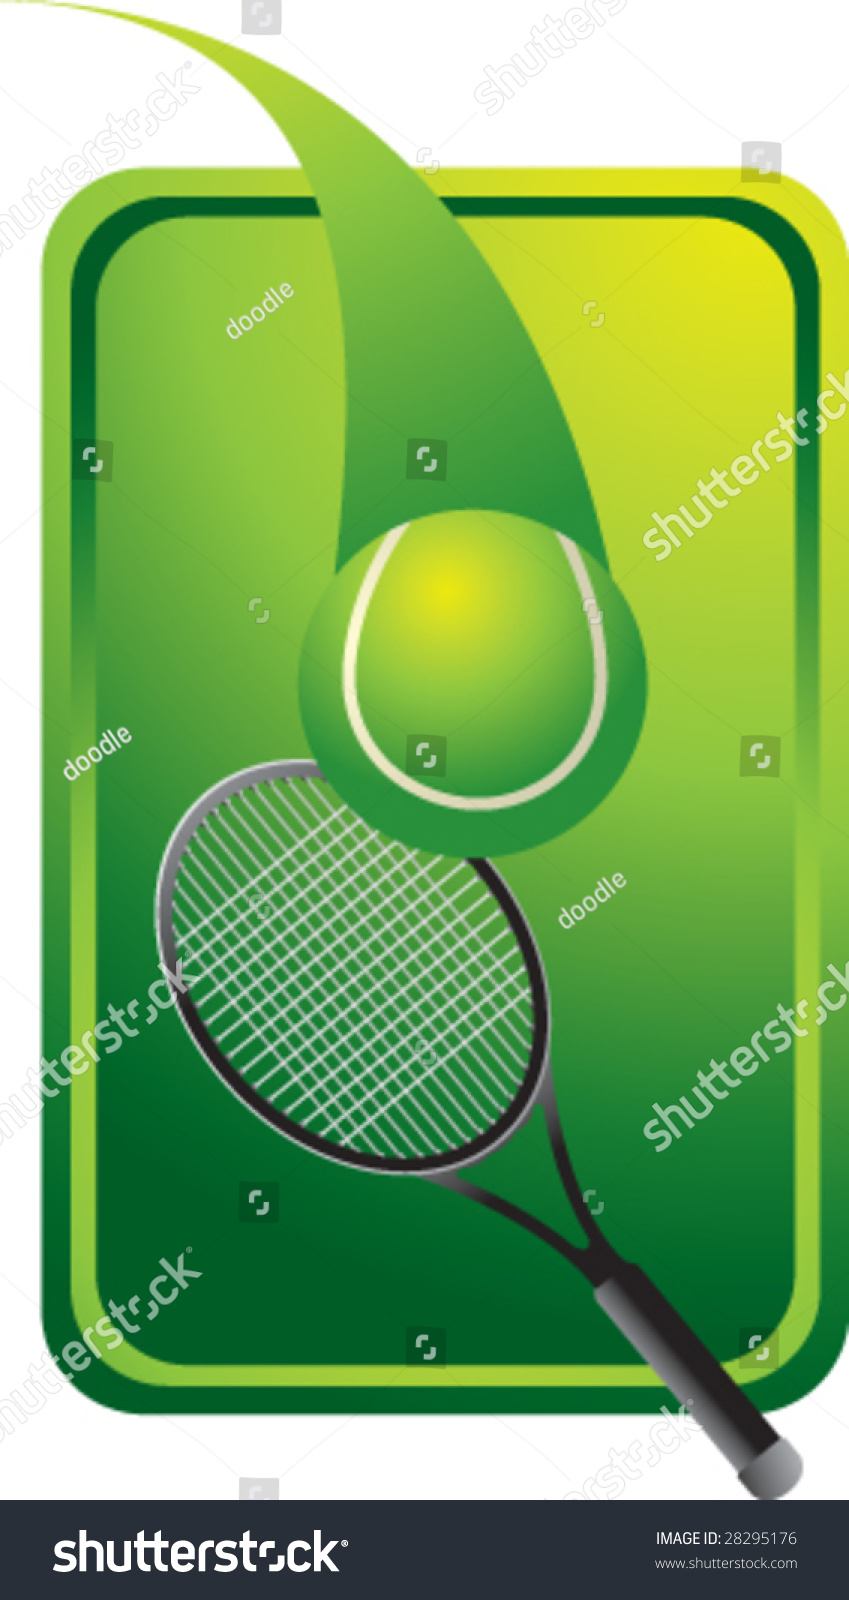 tab tennis